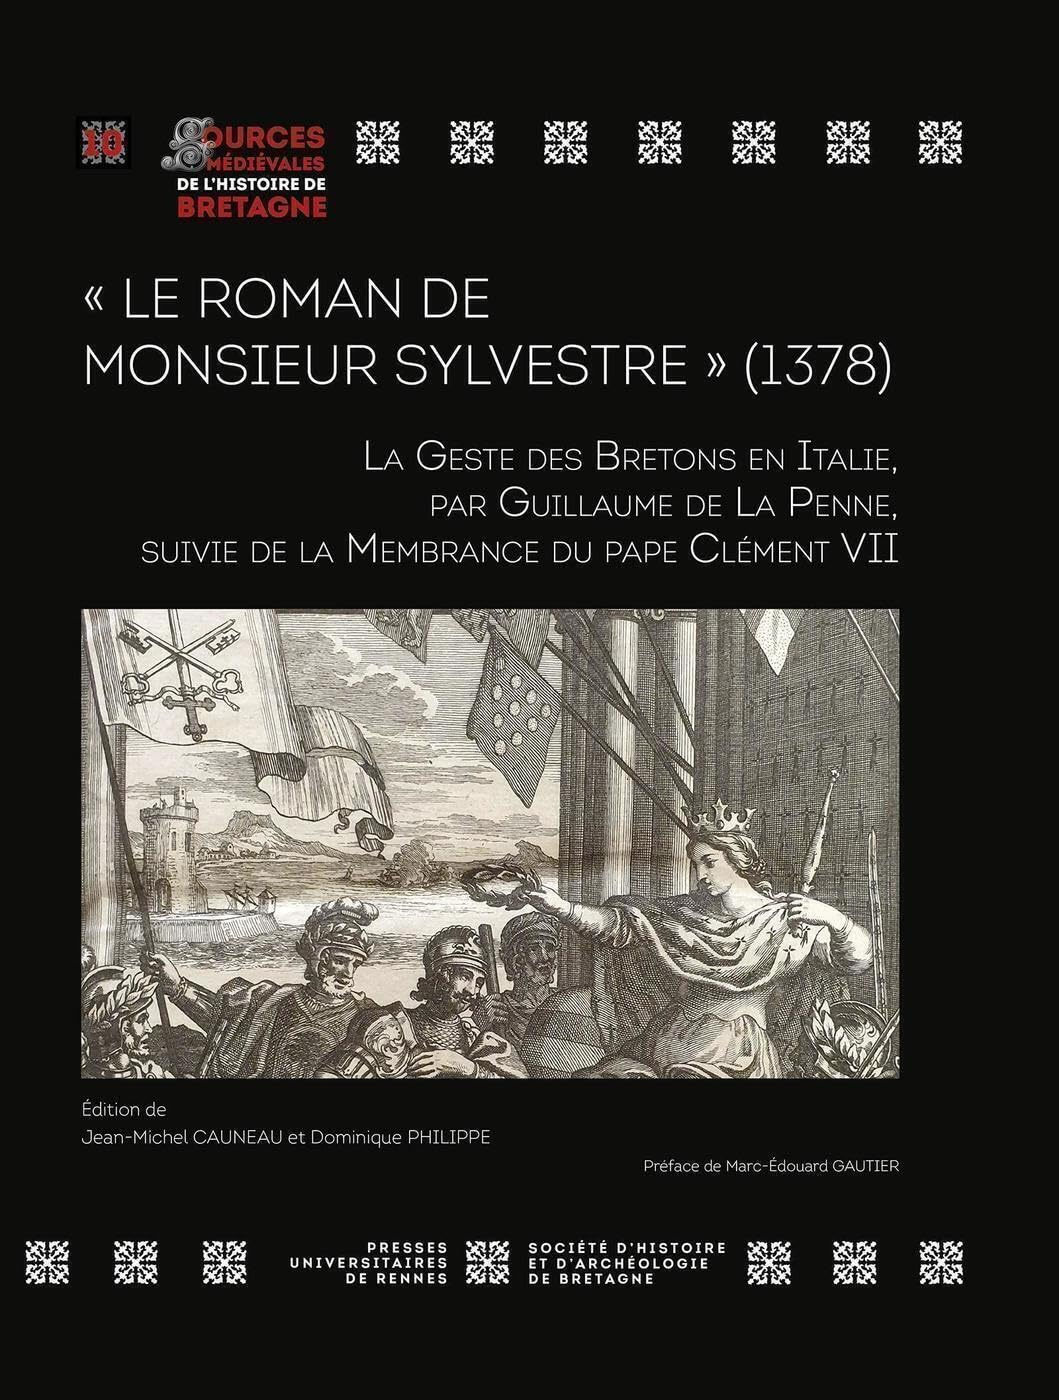 Le roman de monsieur Sylvestre (1378) : la geste des Bretons en Italie. La membrance du pape Clément